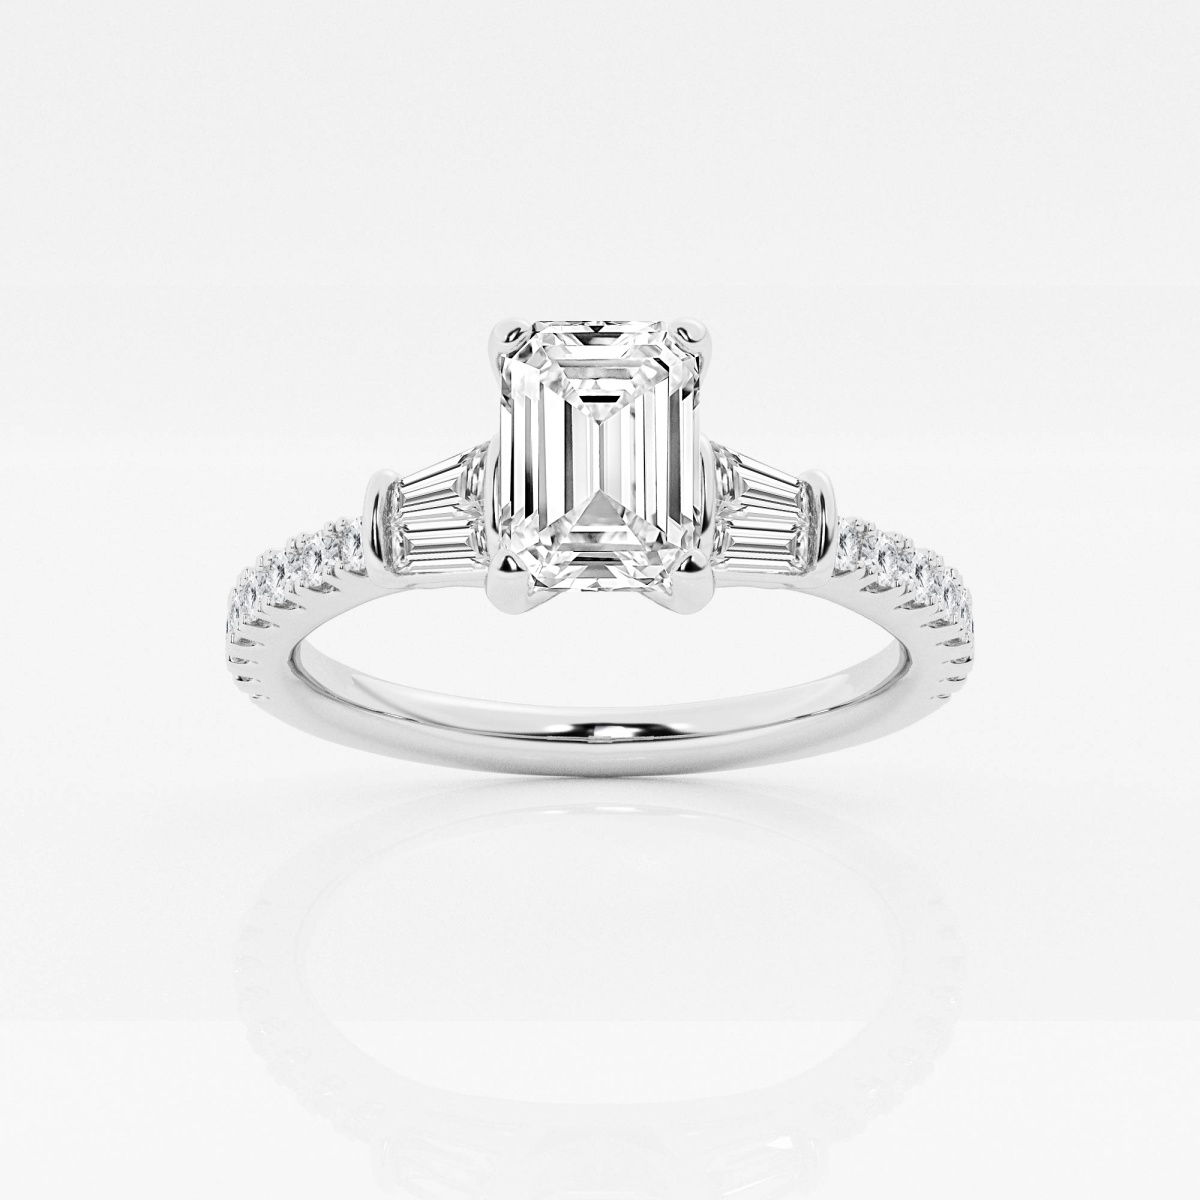 1/2 CTW Baguette Diamond Wedding Ring in Platinum